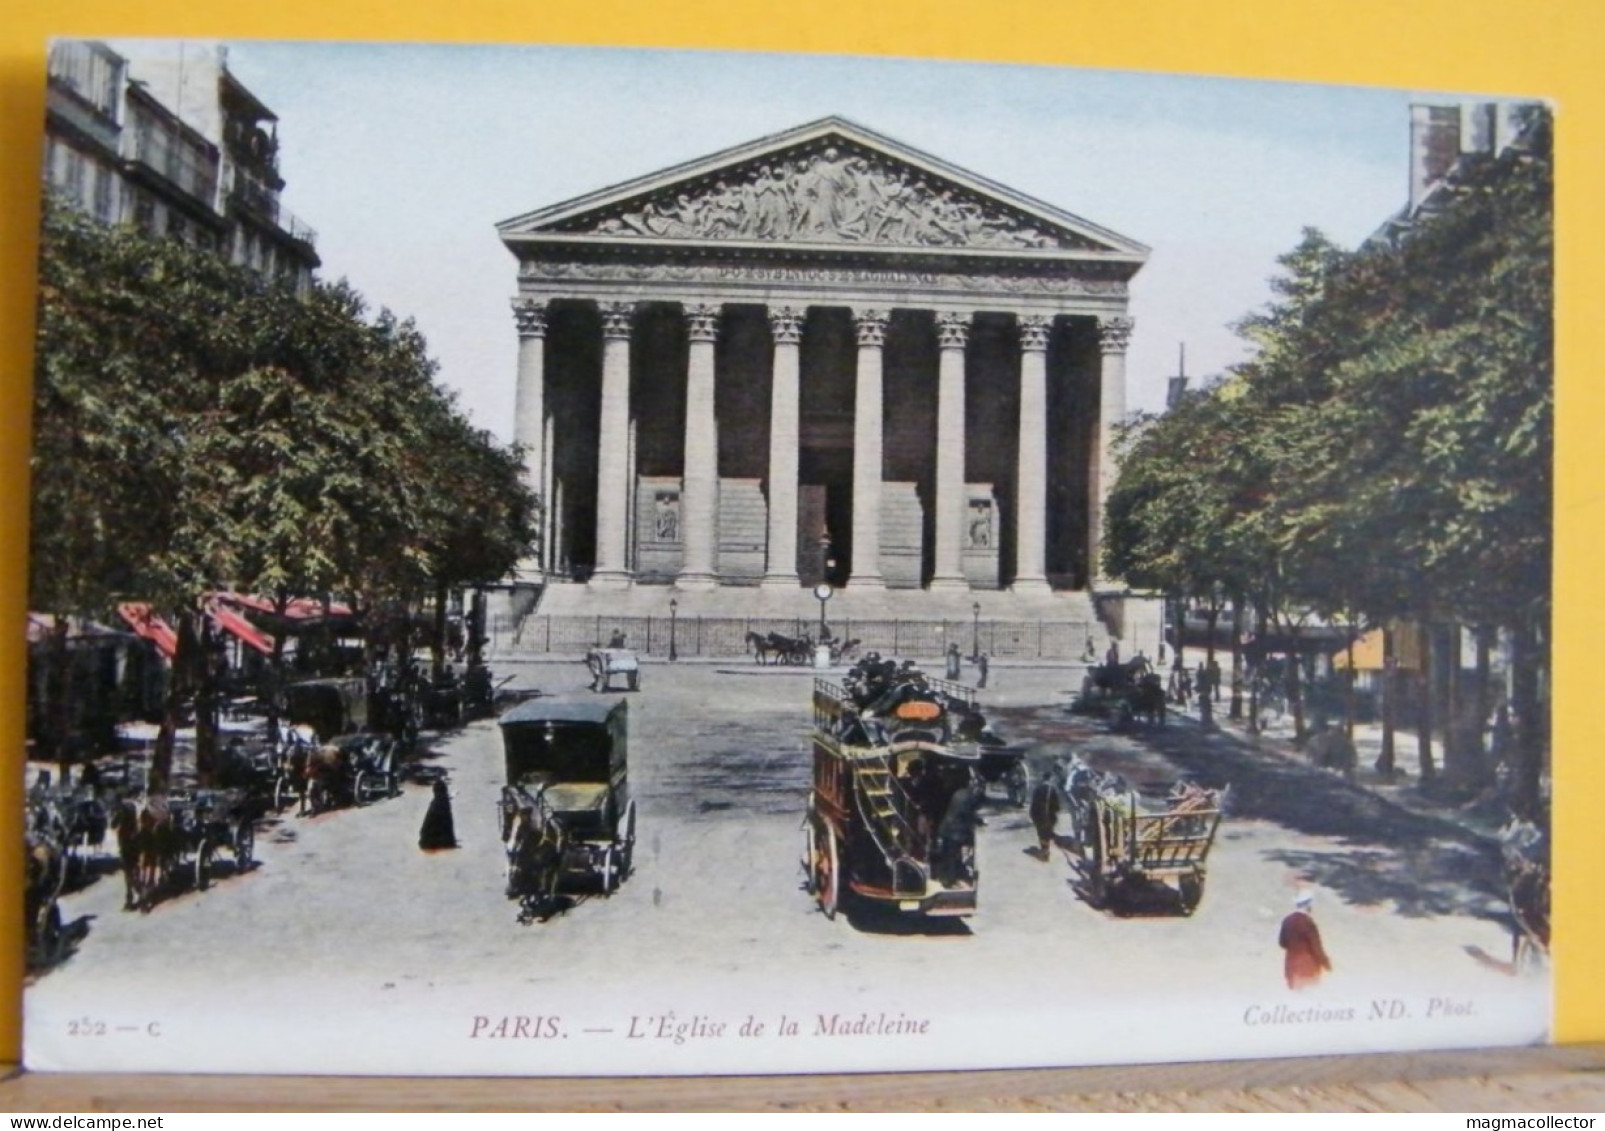 (P1) PARIGI / PARIS - L'EGLISE DE LA MADELEINE - 252-C - NON VIAGGIATA 1910/20ca - Iglesias